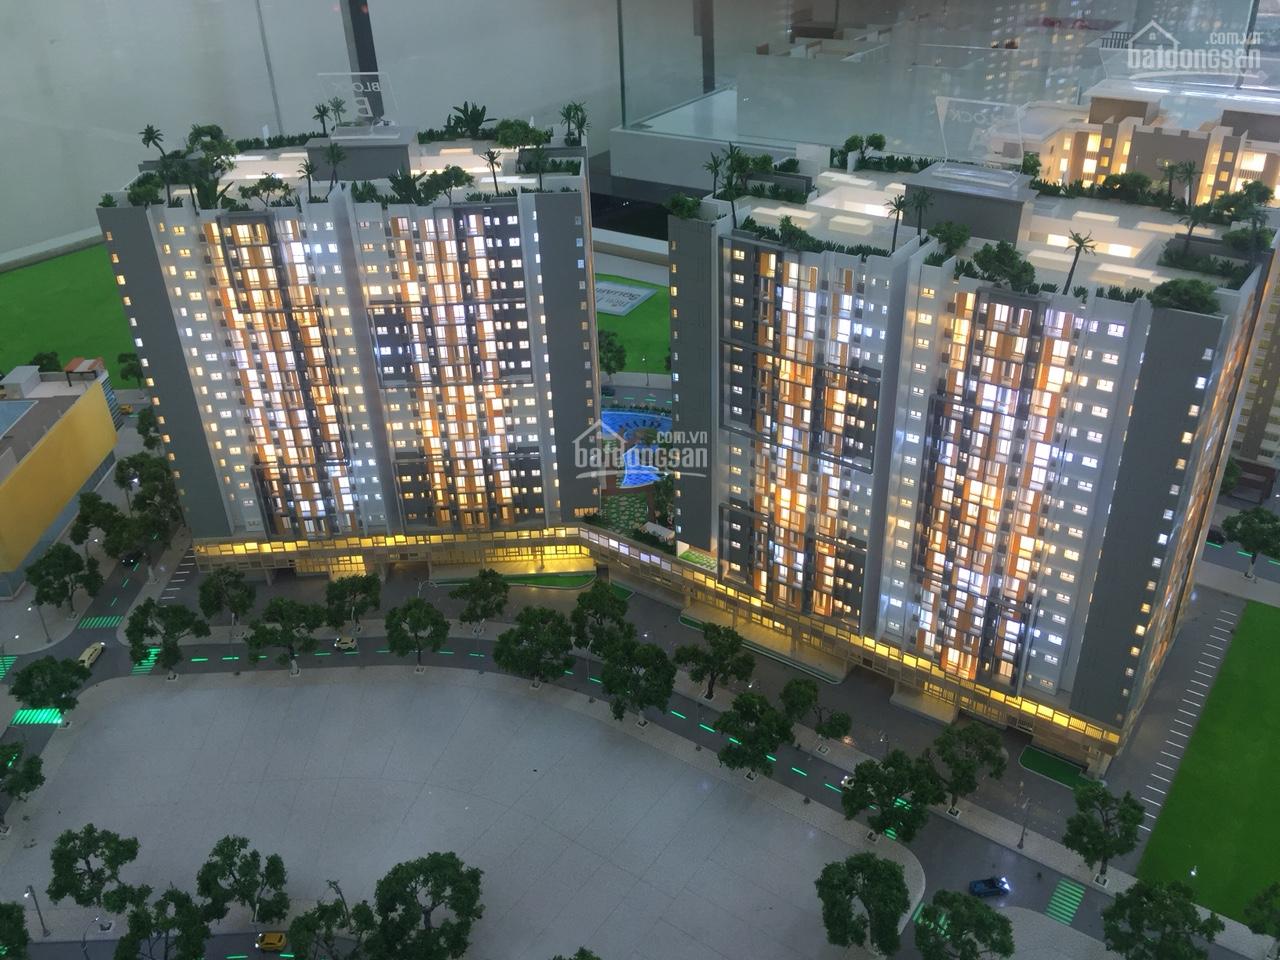 Bán Topaz Win, Biên Hòa, Đồng Nai, căn hộ chung cư cao cấp, bảng giá tốt nhất thị trường.